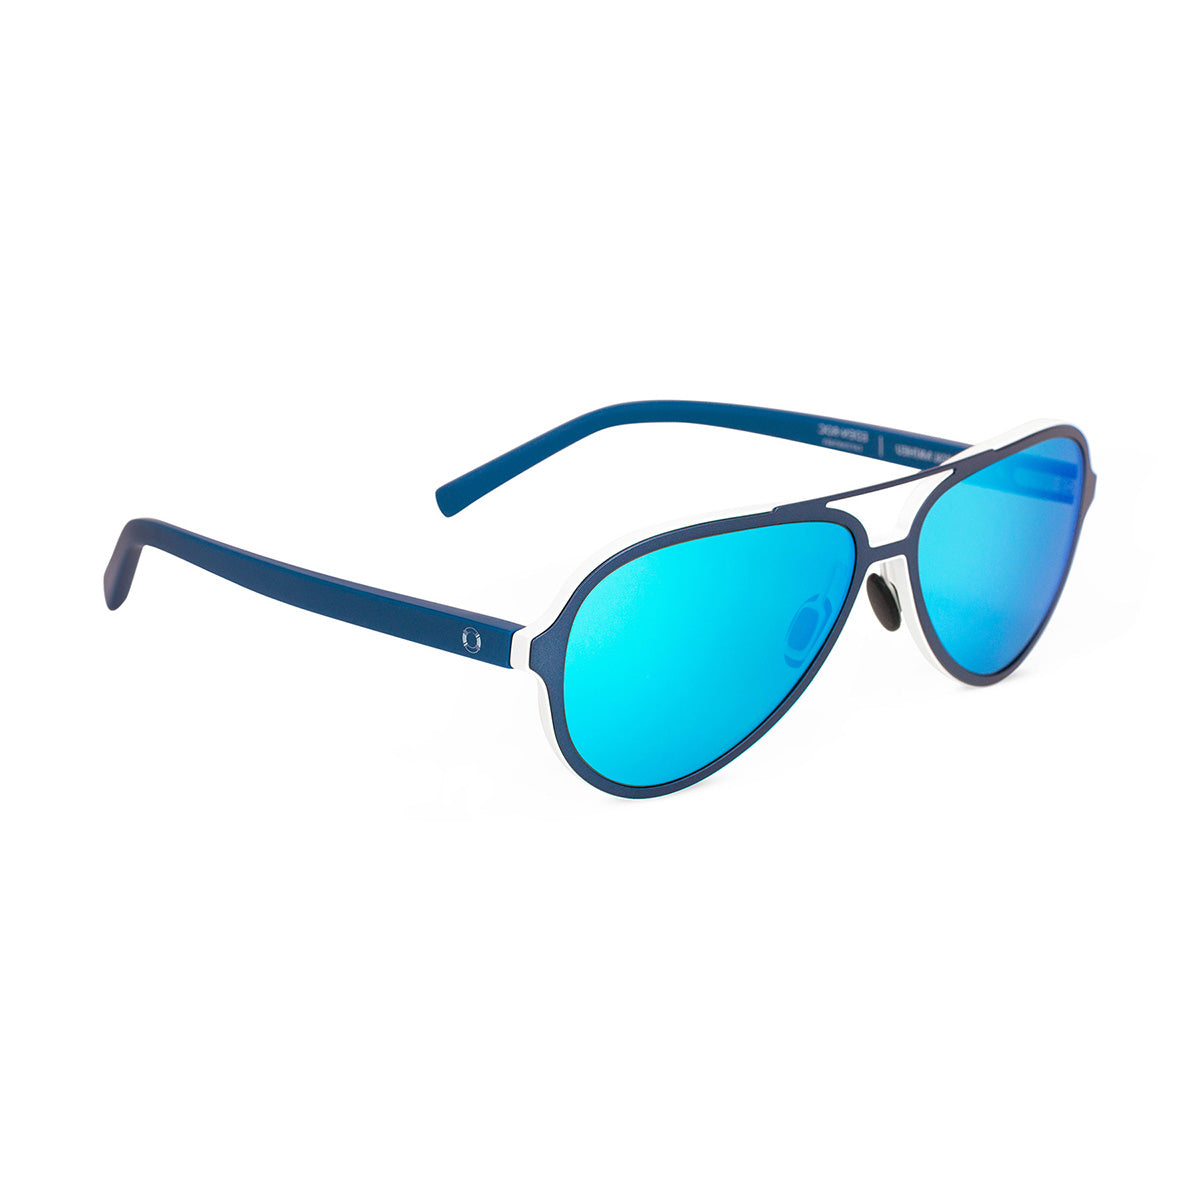 Pascal Mathieu Hotel du Cap-Eden-Roc Exclusive Edition Sunglasses - Aviator - Oetker Collection Boutique